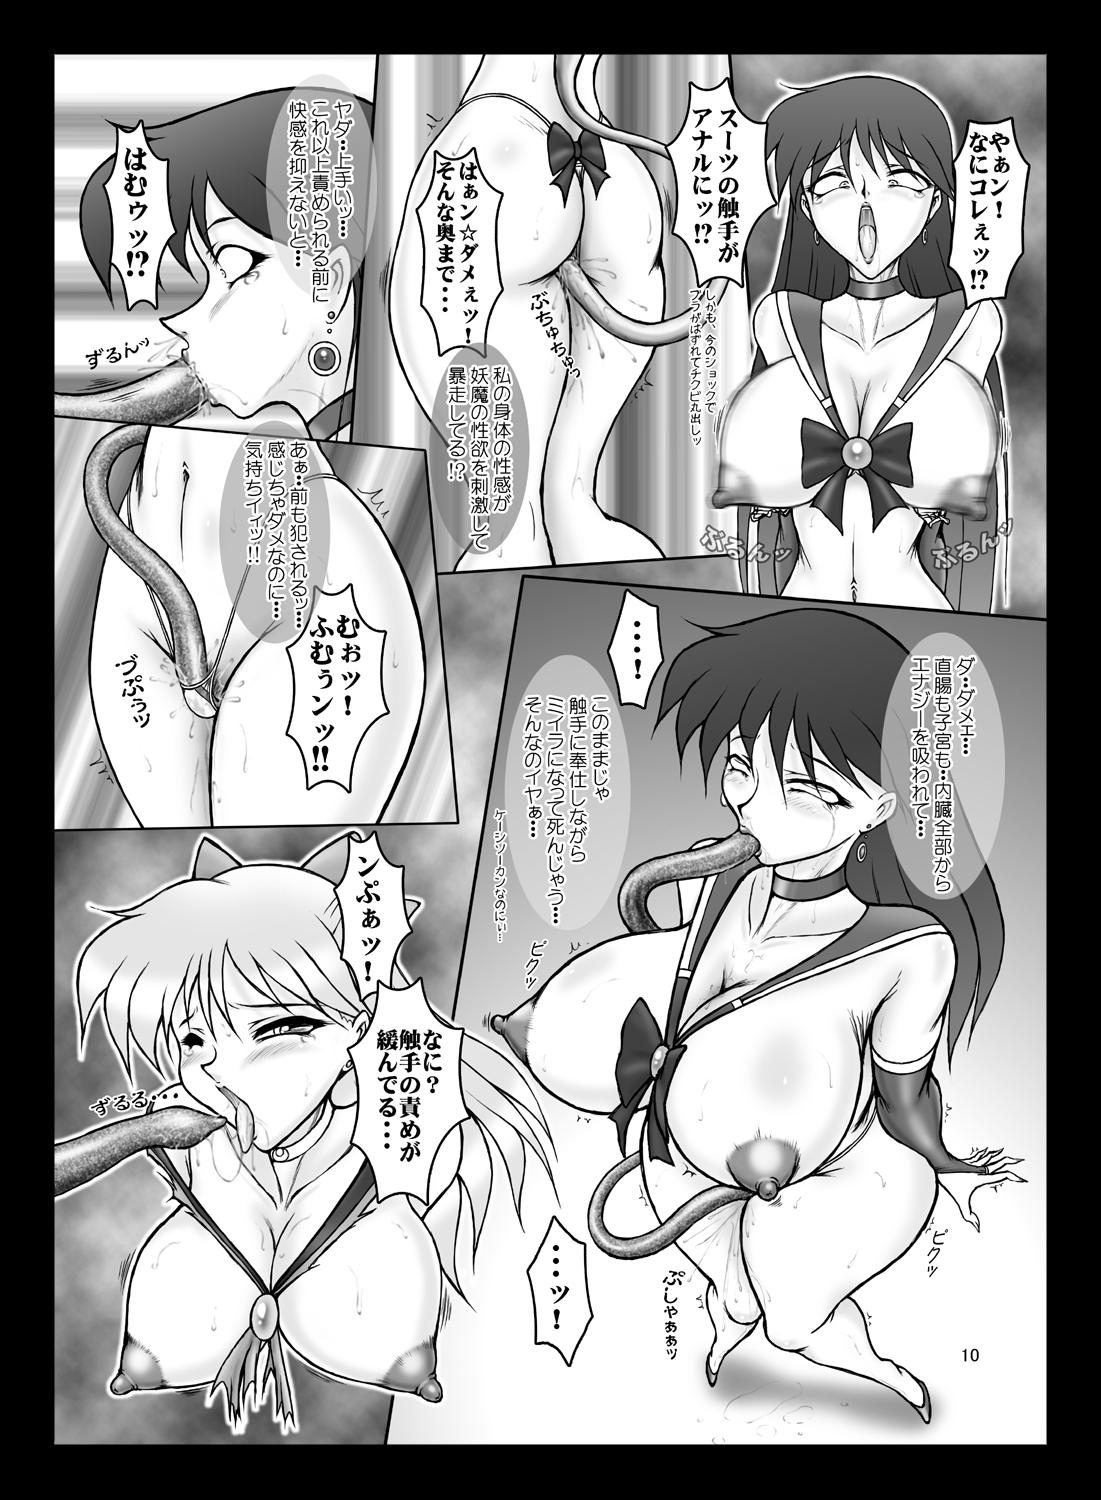 Gayporn V for Sailor V - Sailor moon Amatur Porn - Page 9